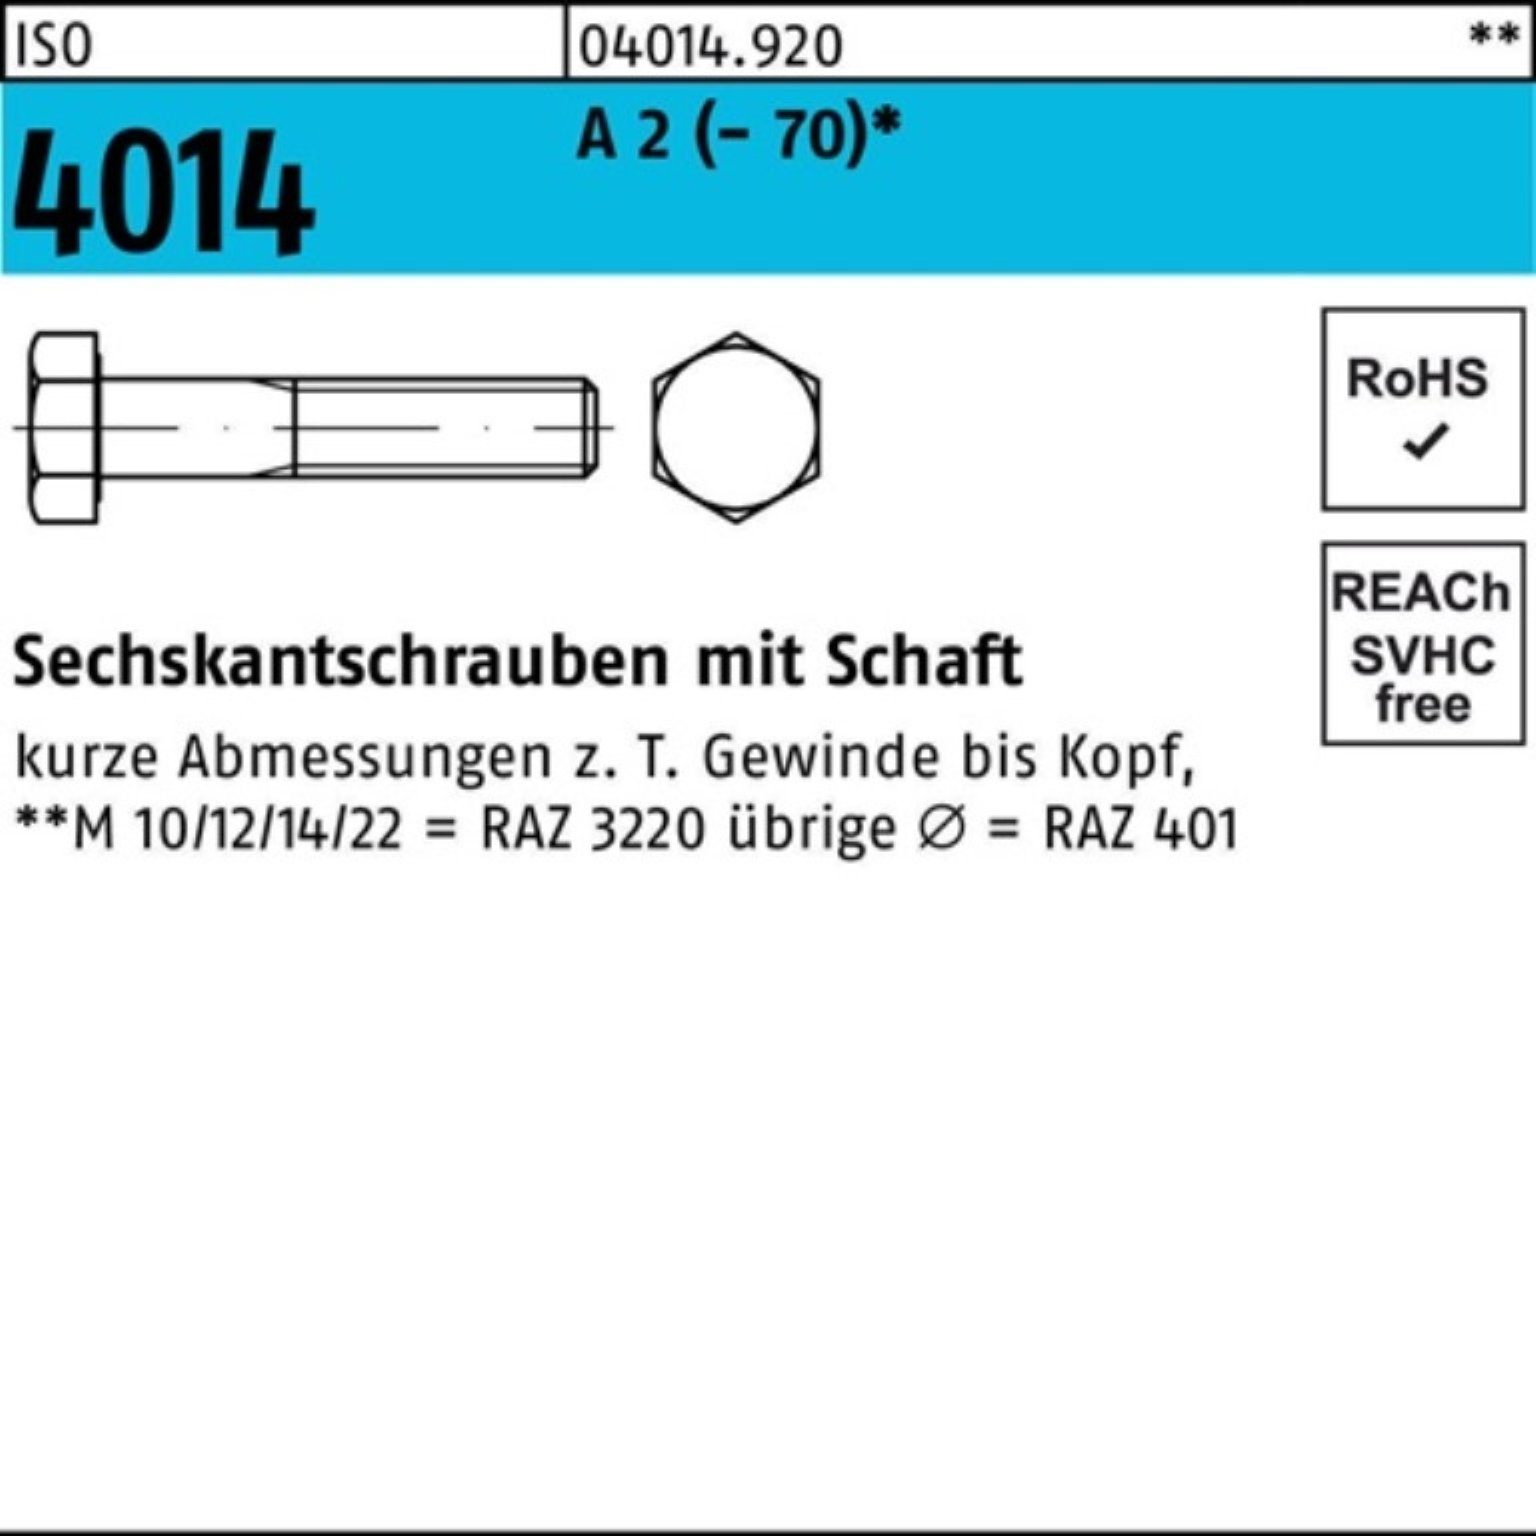 Bufab Sechskantschraube 100er Pack Sechskantschraube ISO 4014 Schaft M12x 80 A 2 (70) 50 St